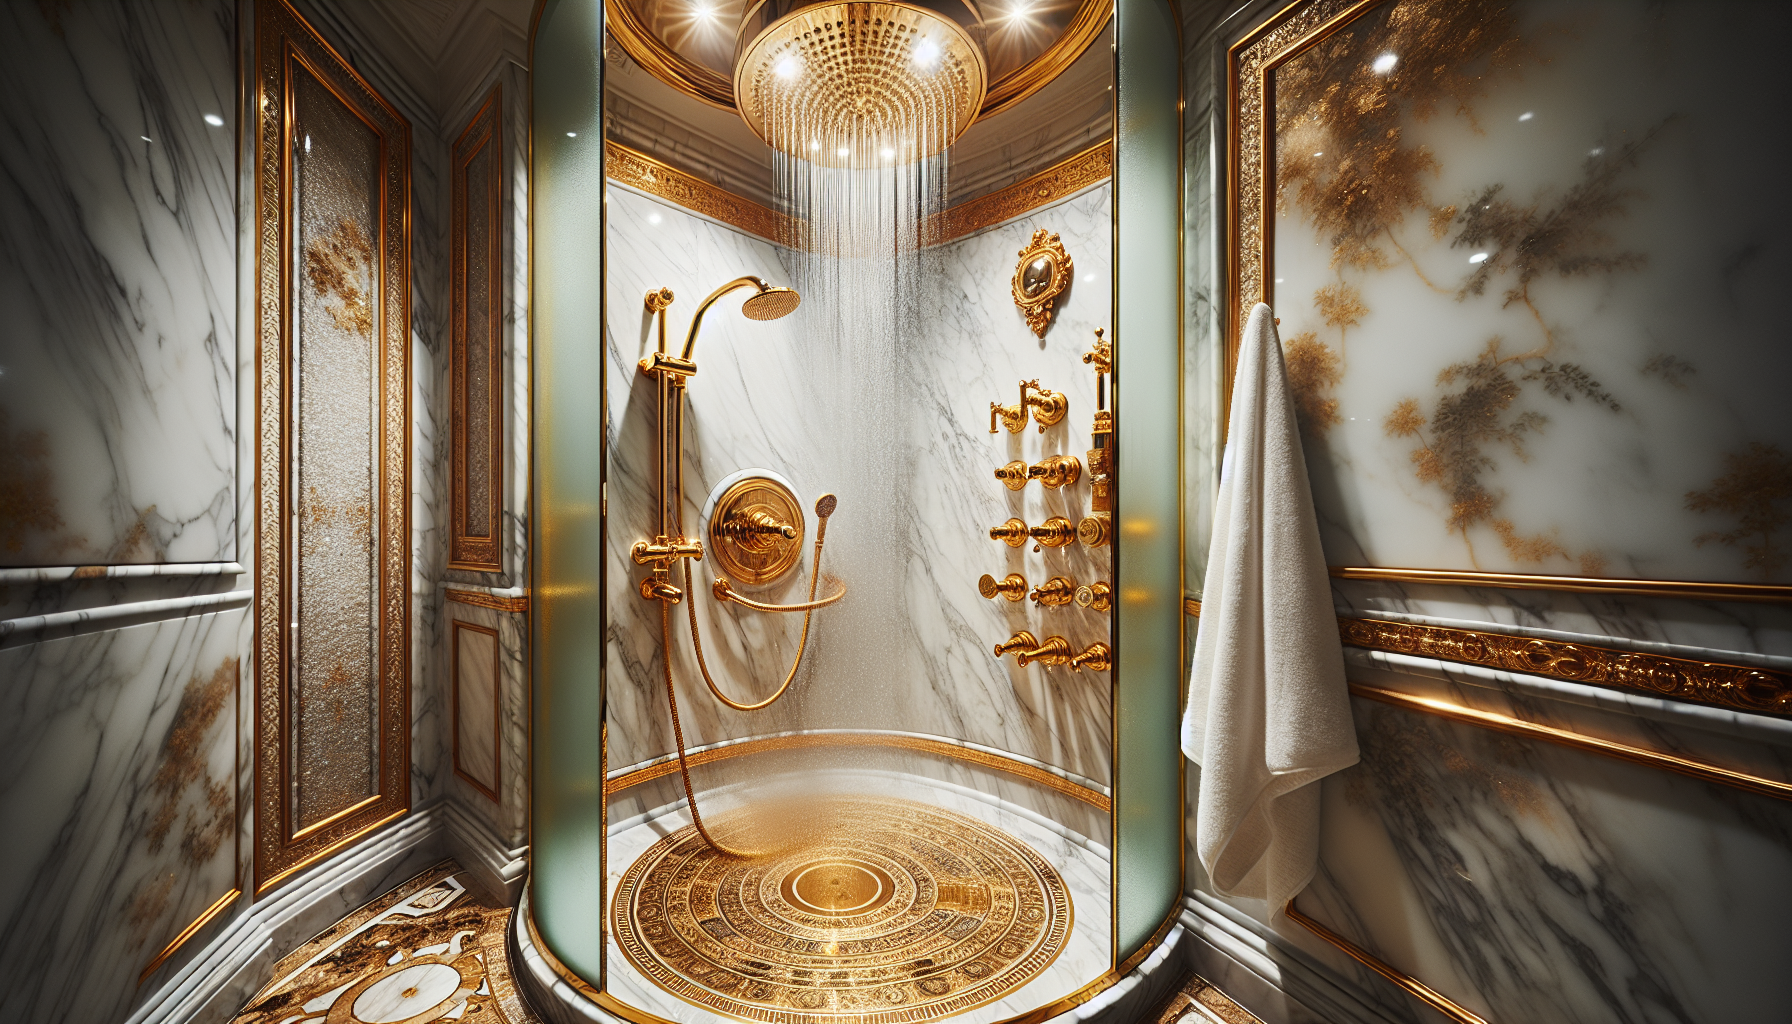 Luxuriöse Dusche und hochwertige Armaturen für ein exquisites Badeerlebnis